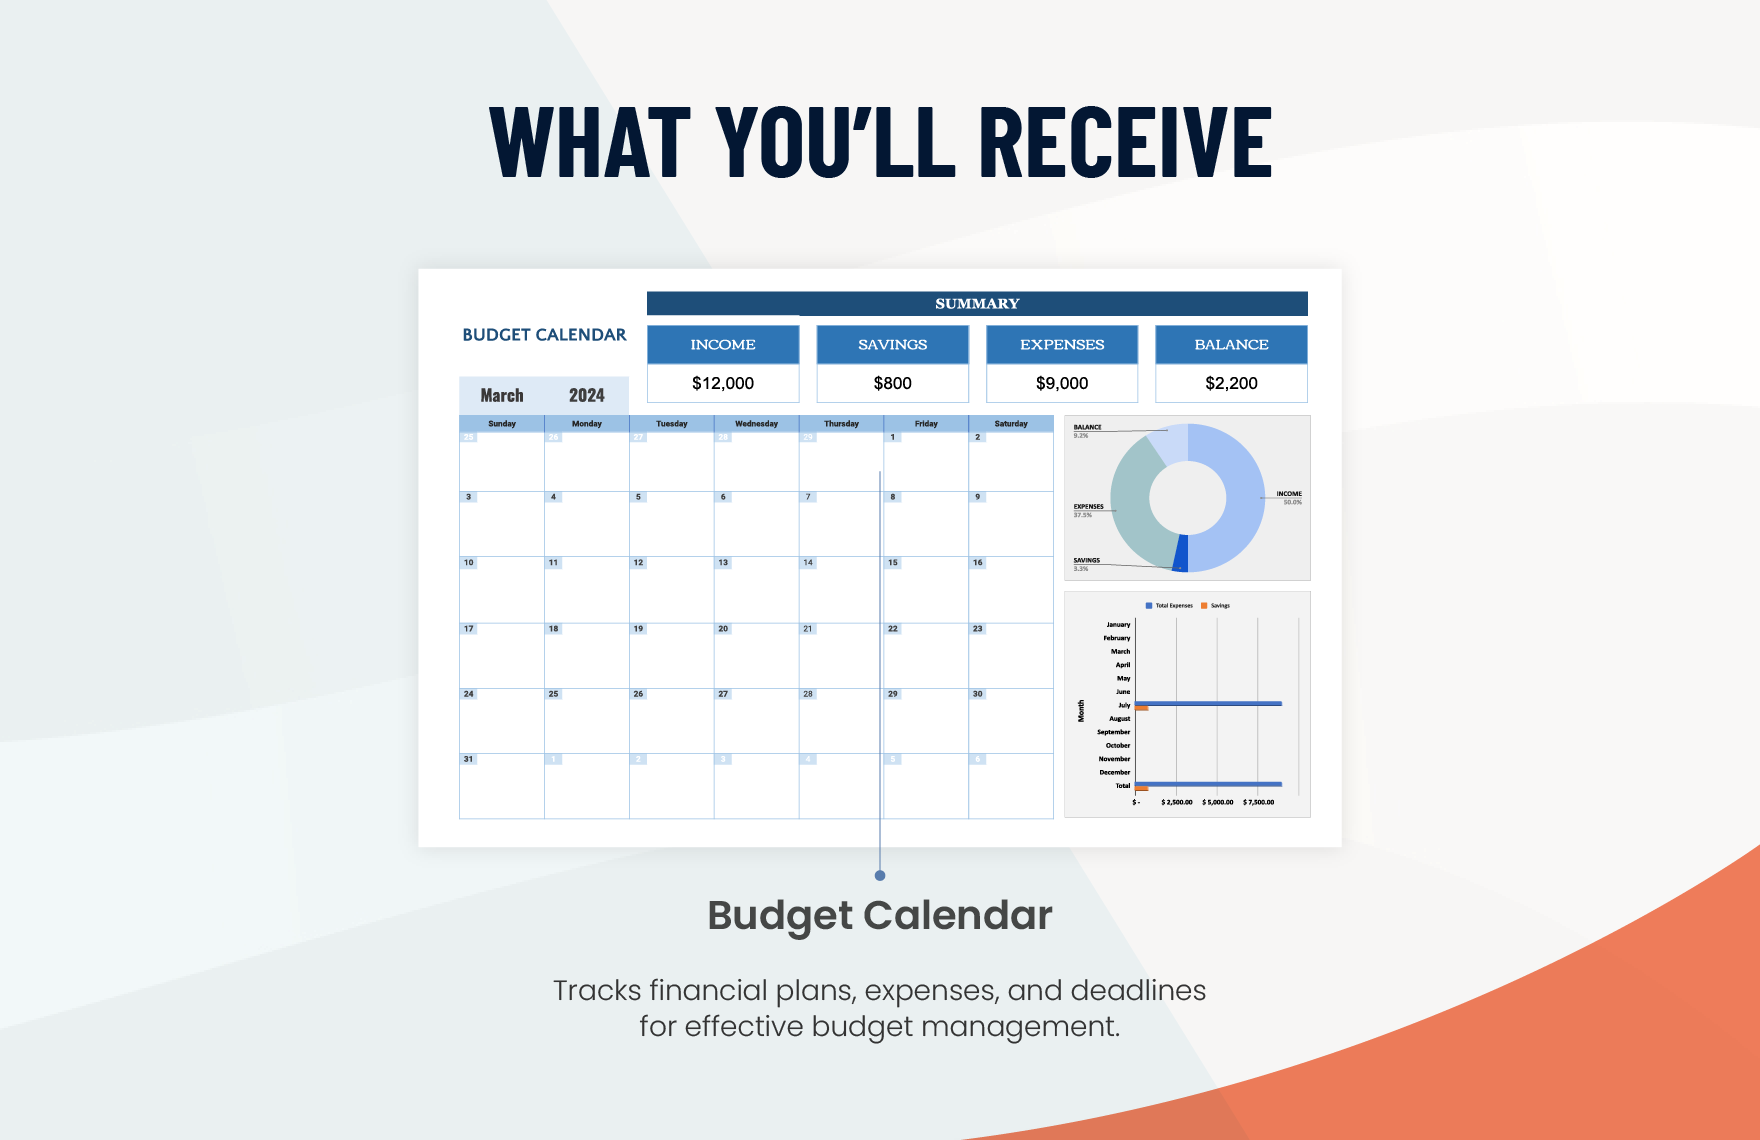 Budget Calendar Template